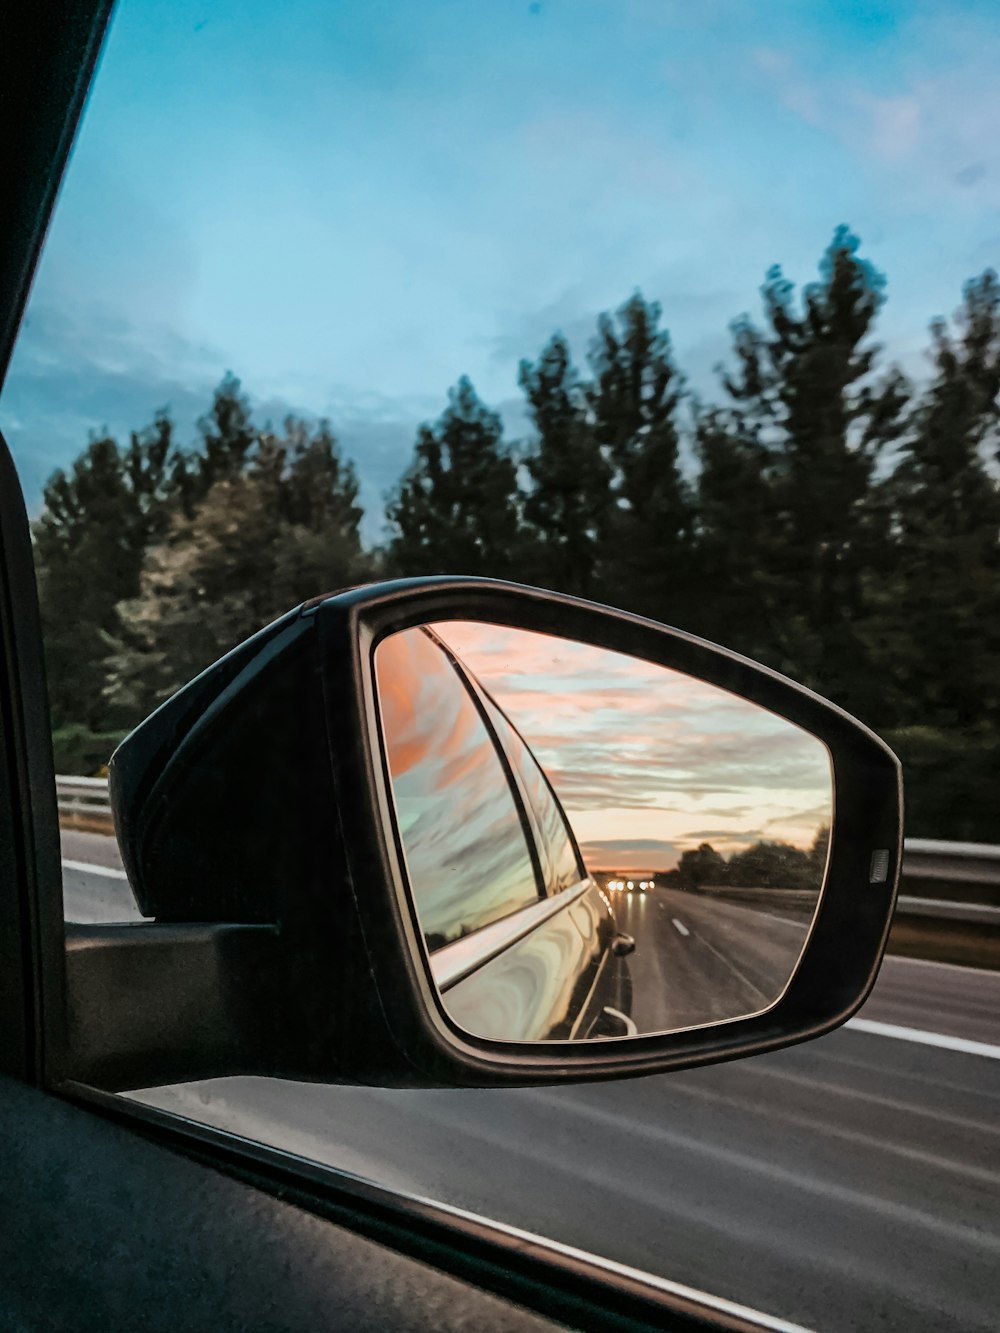 espelho lateral do carro mostrando o carro na estrada durante o dia